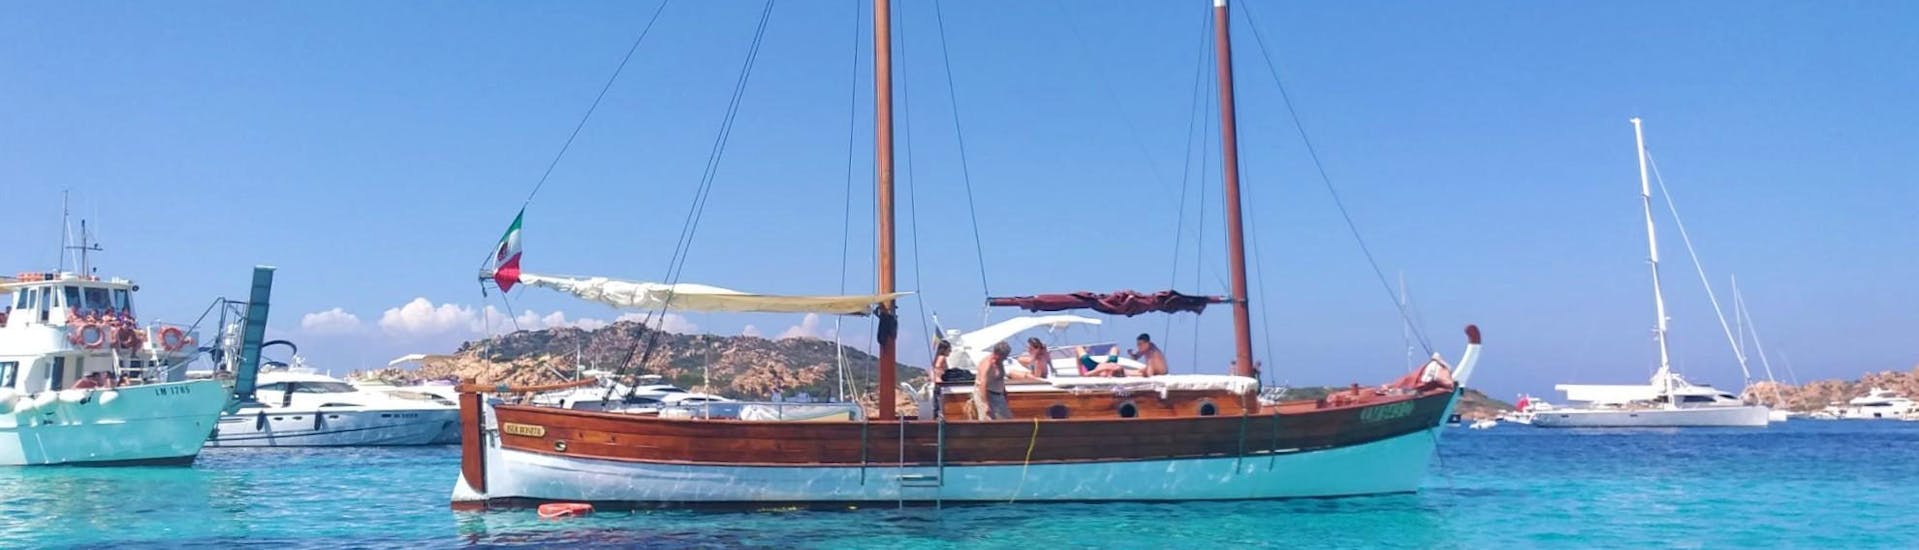 El velero vintage listo para partir para el viaje al Archipiélago de La Maddalena, con almuerzo, con Gite alle isole Palau.